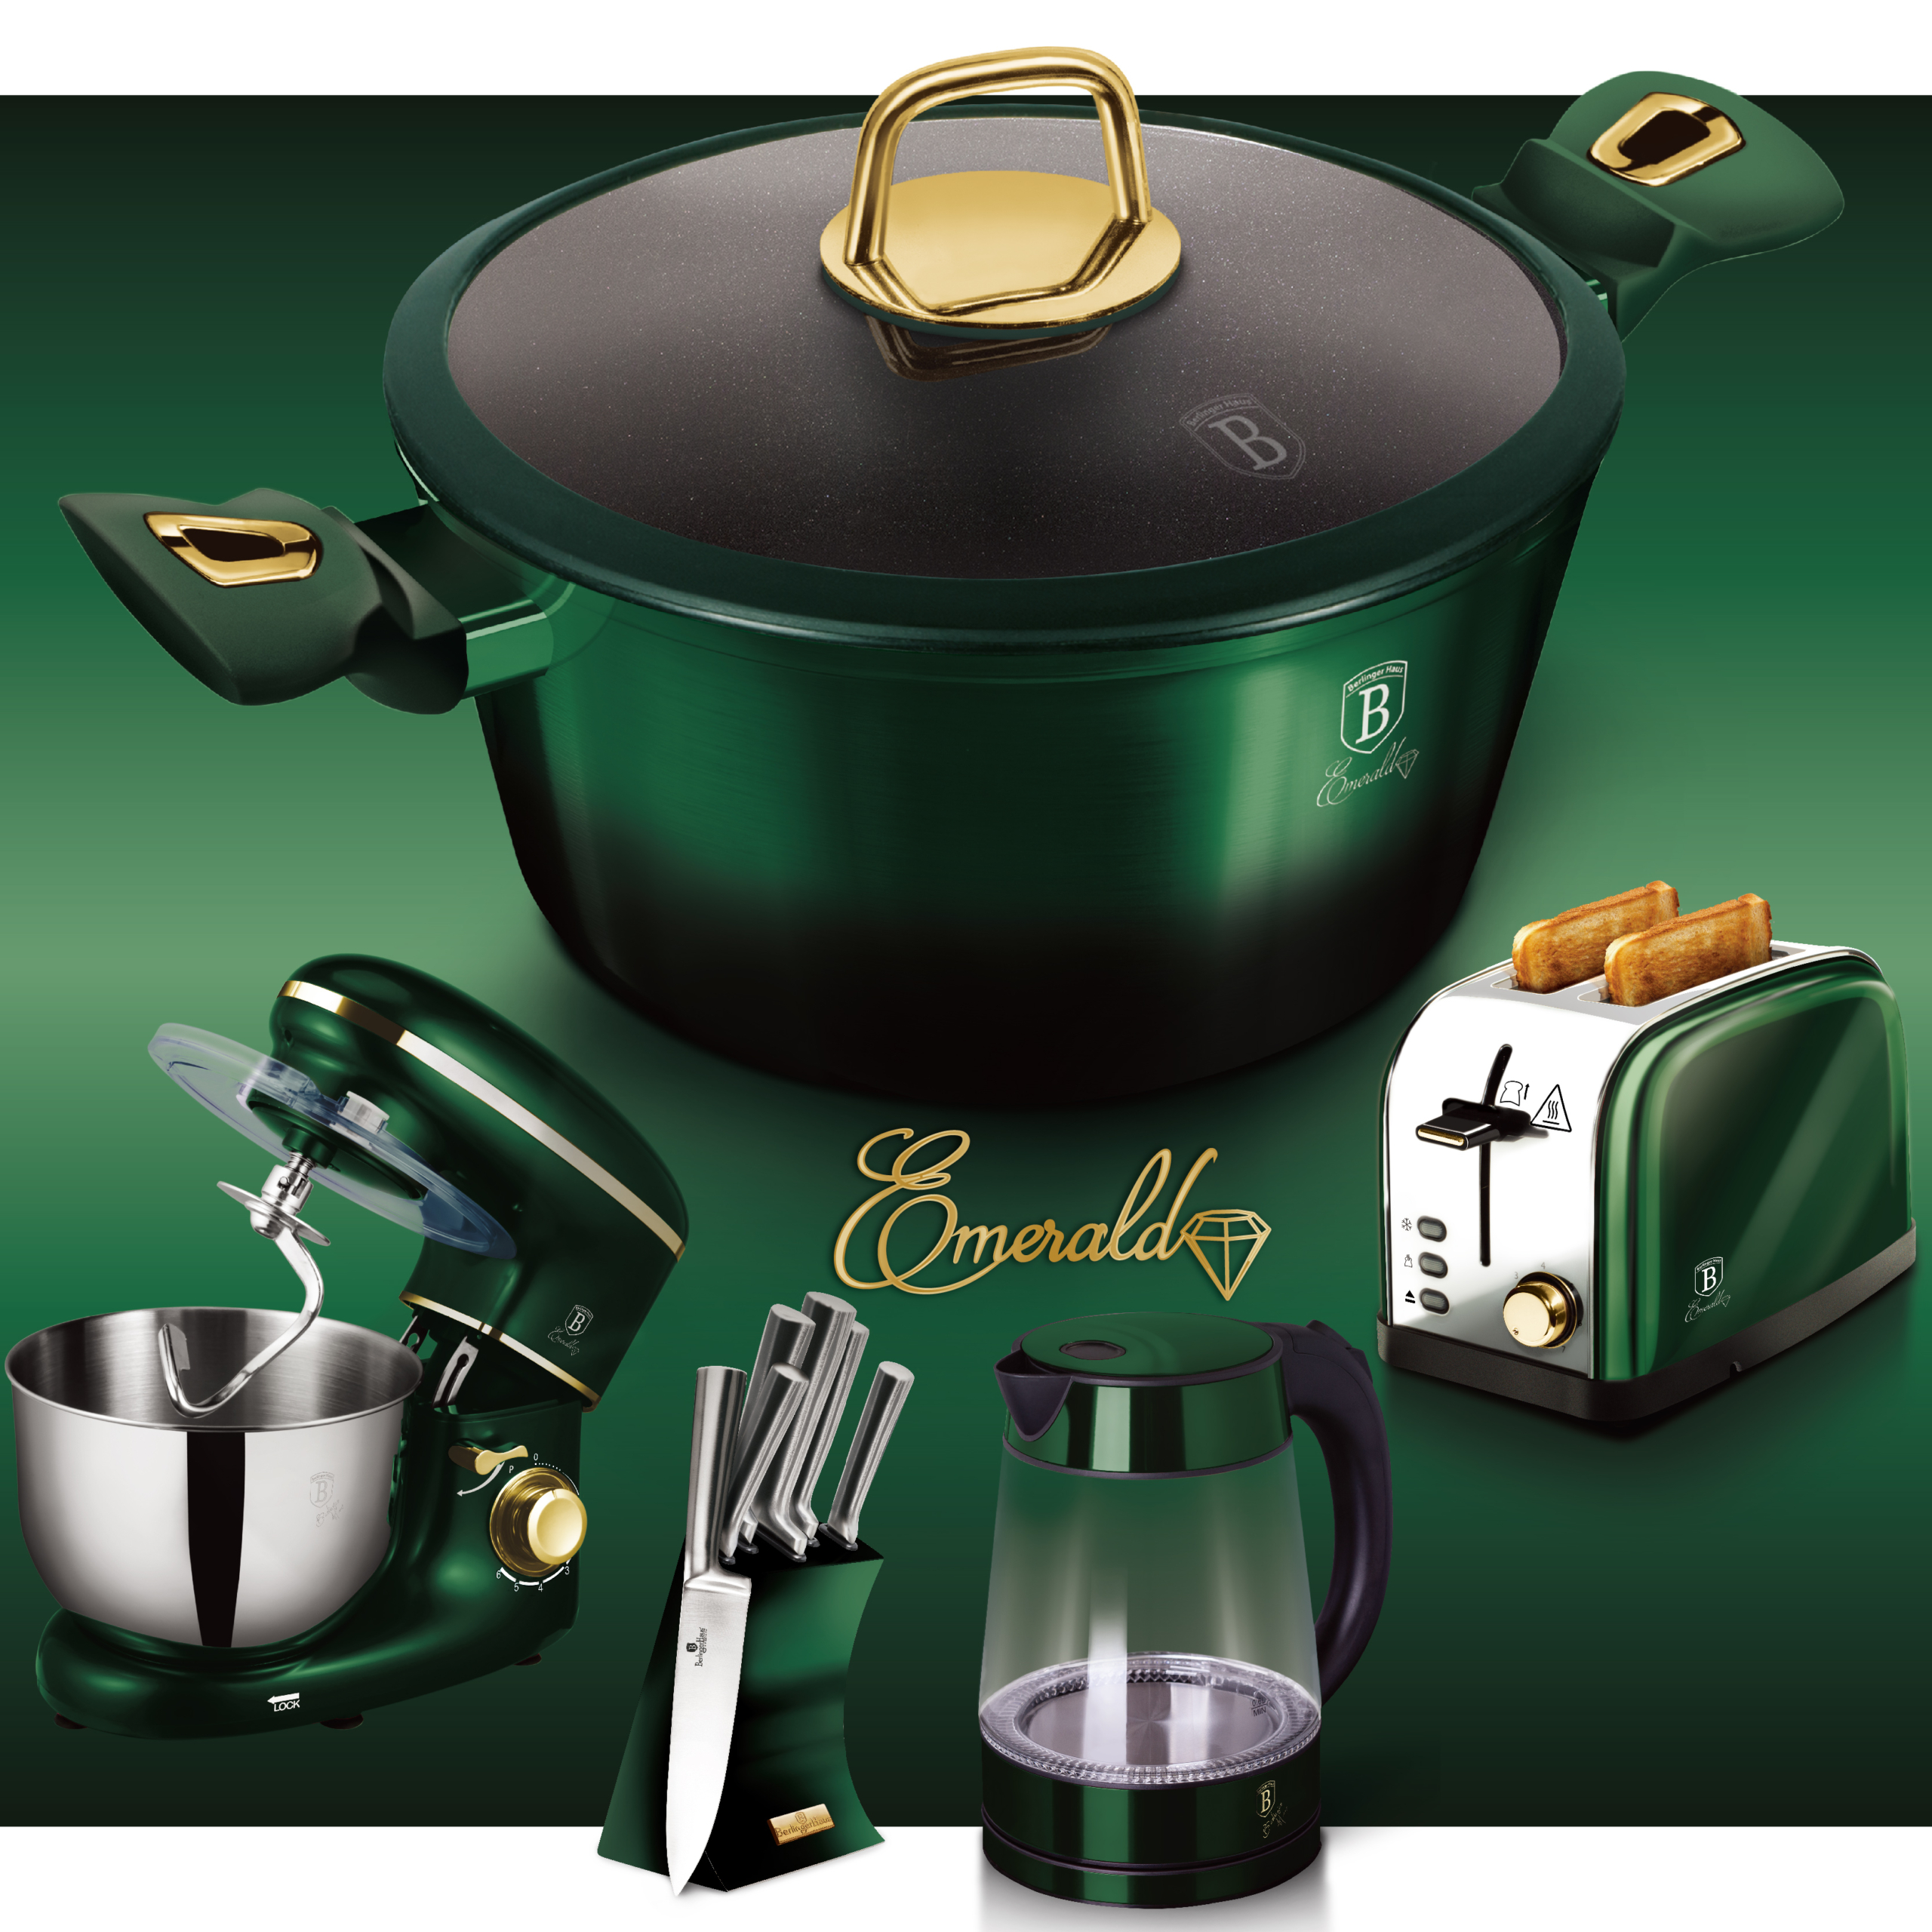 BerlingerHaus Emerald Collection termék család oldal a főbb konyhai termékekkel